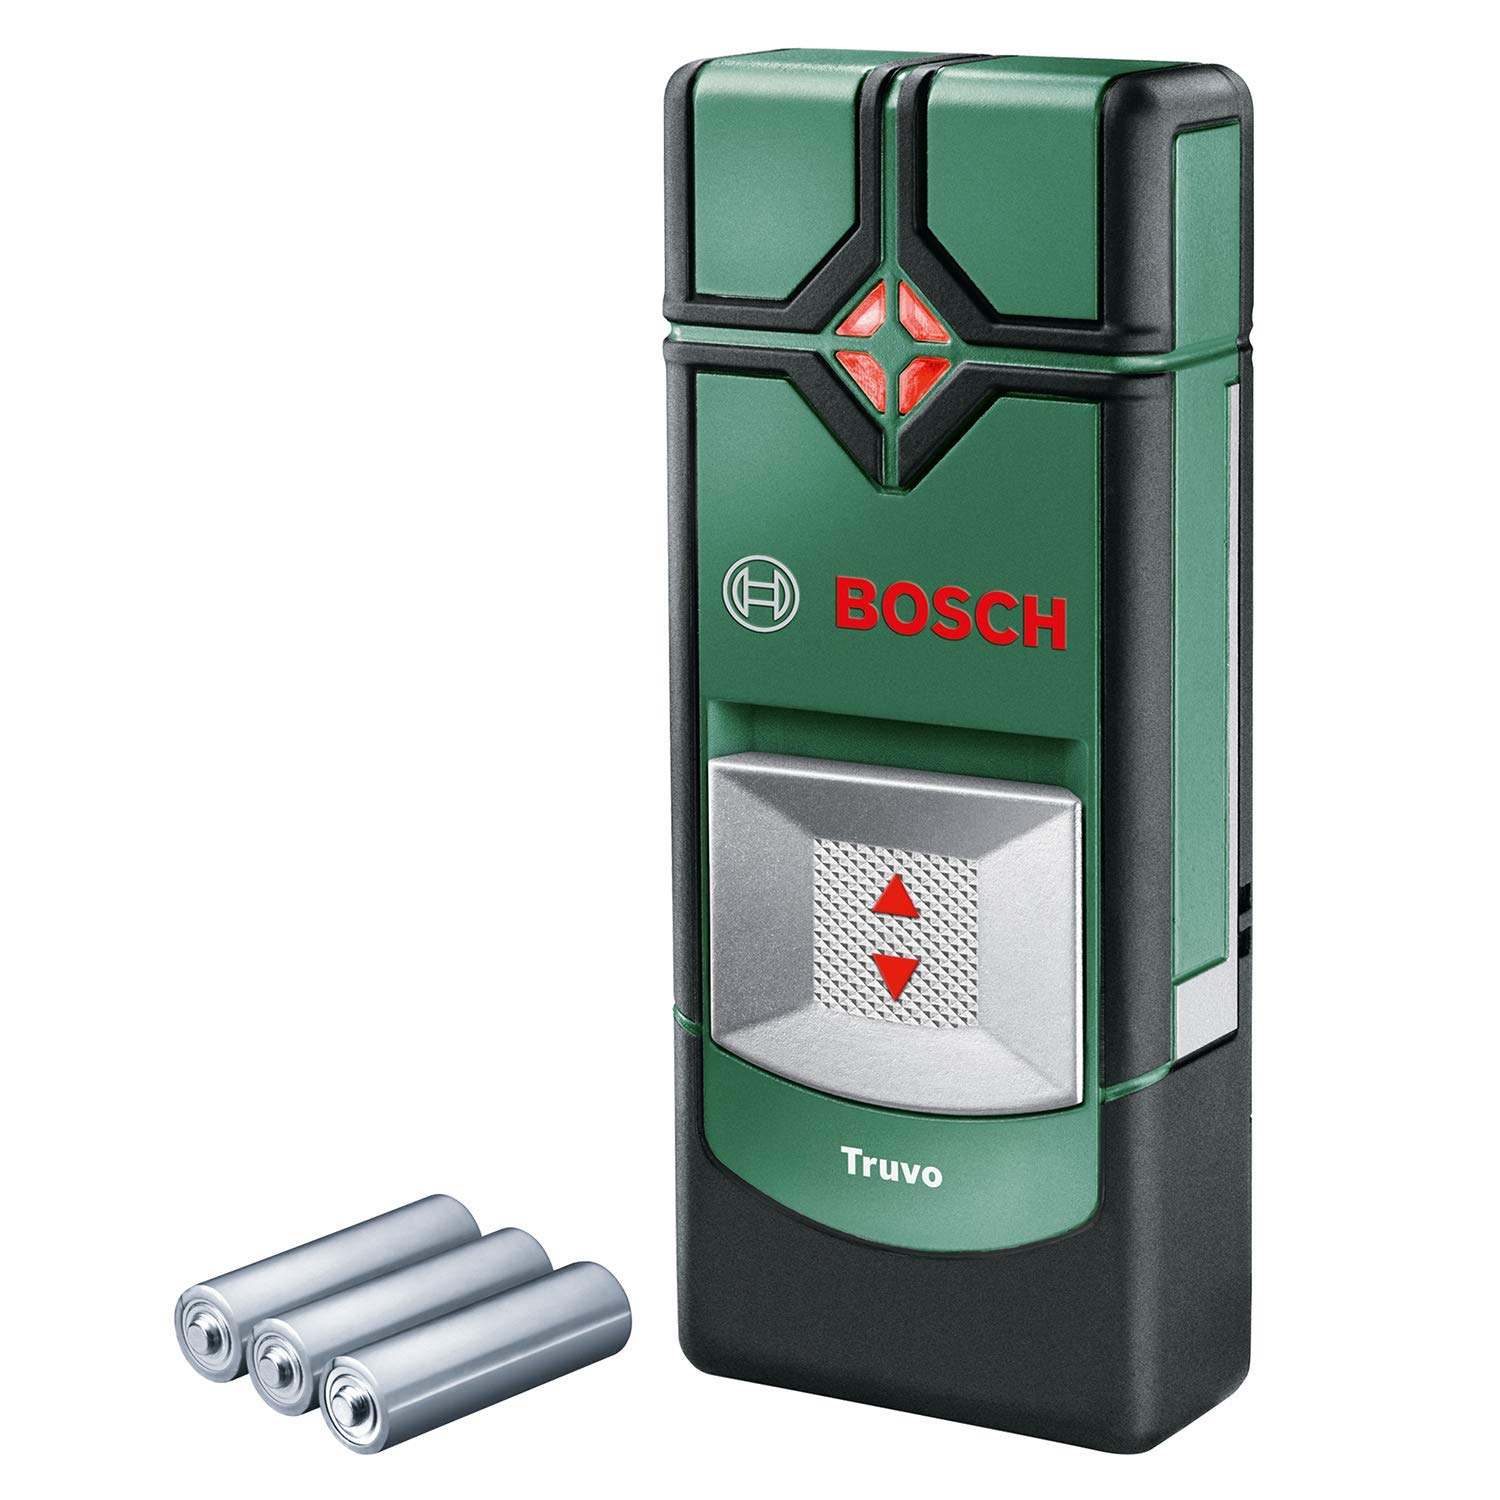 Bosch Ortungsgerät Truvo (Ein-Knopf-Bedienung für einfache Nutzung, Strom & Metall Leitungssucher)